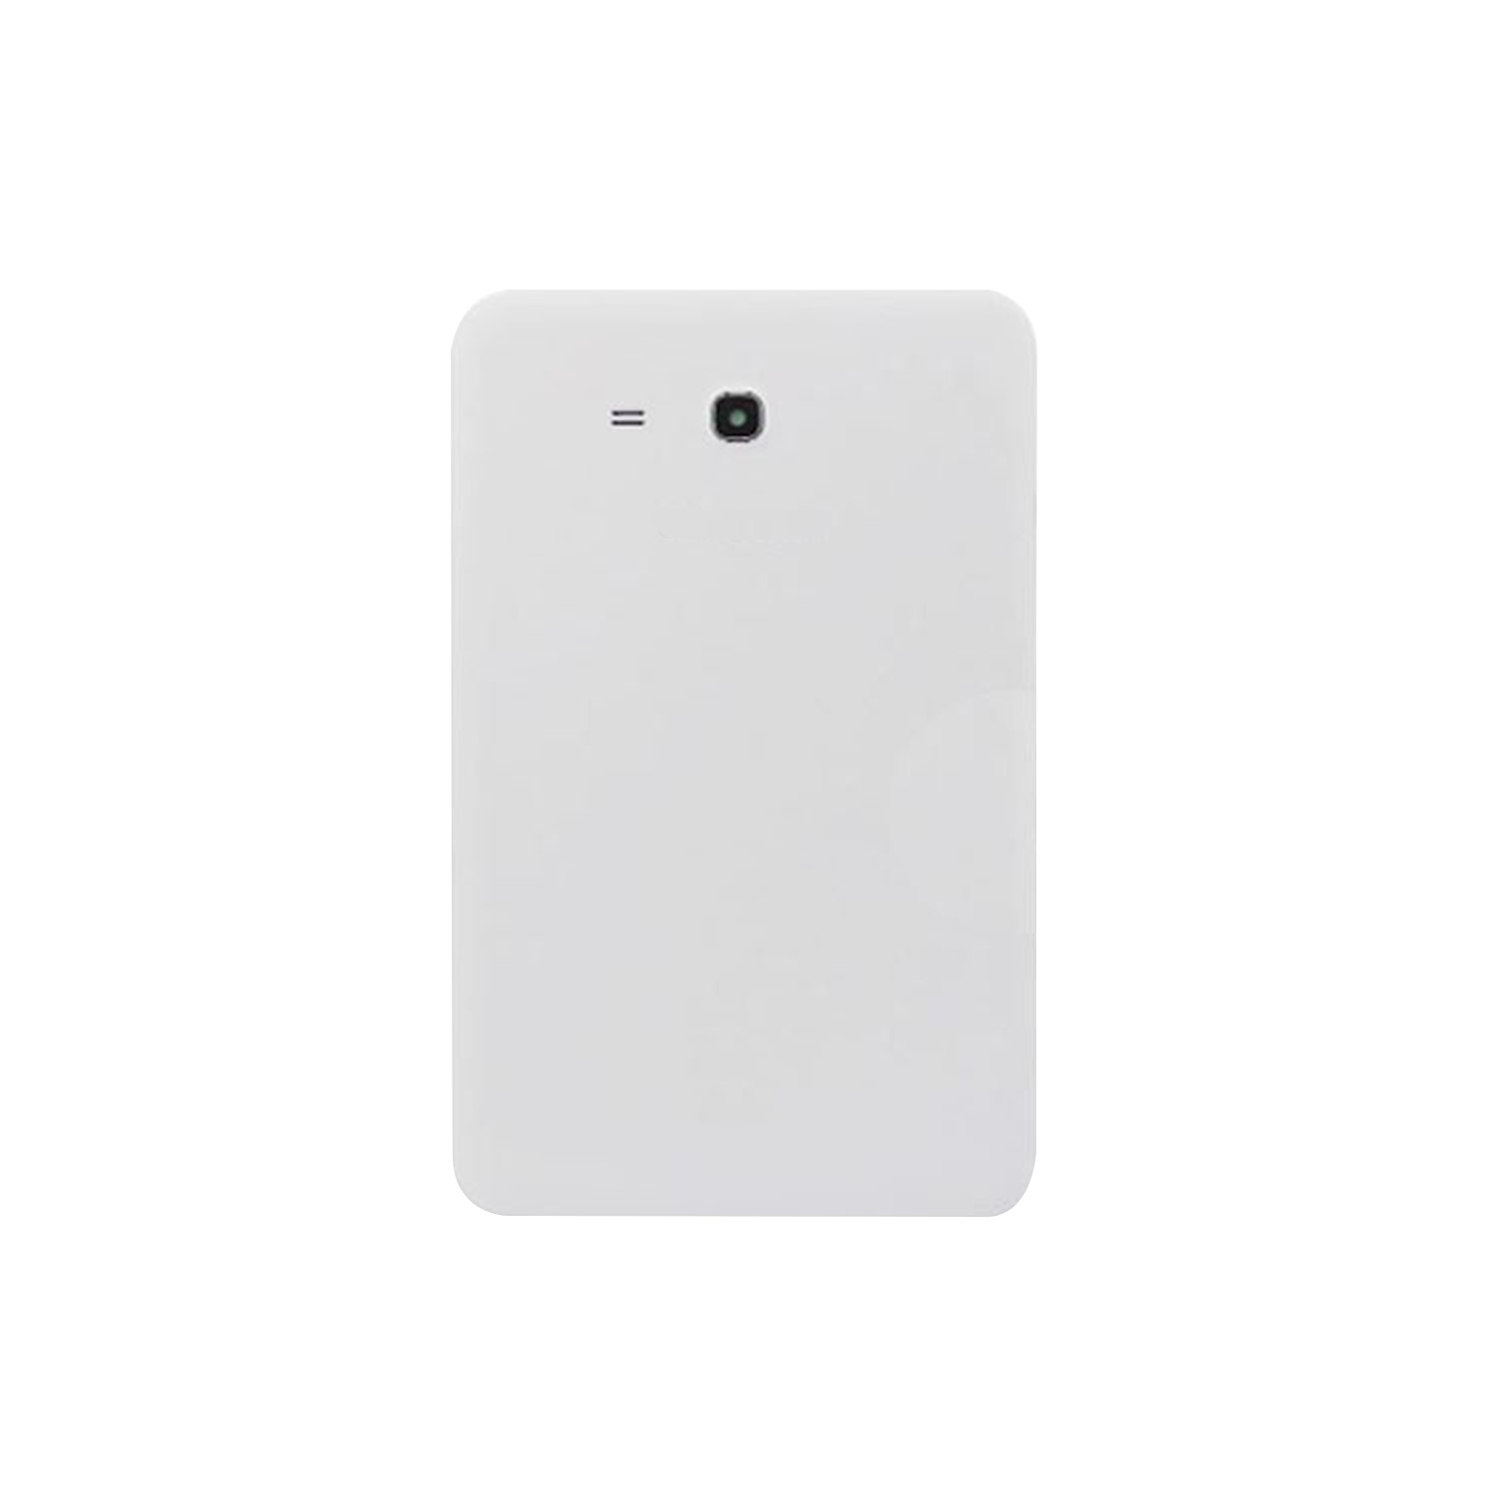 Samsung Galaxy Tab 3 Lite 7.0 SM-T110 Tablet Back Housing - White